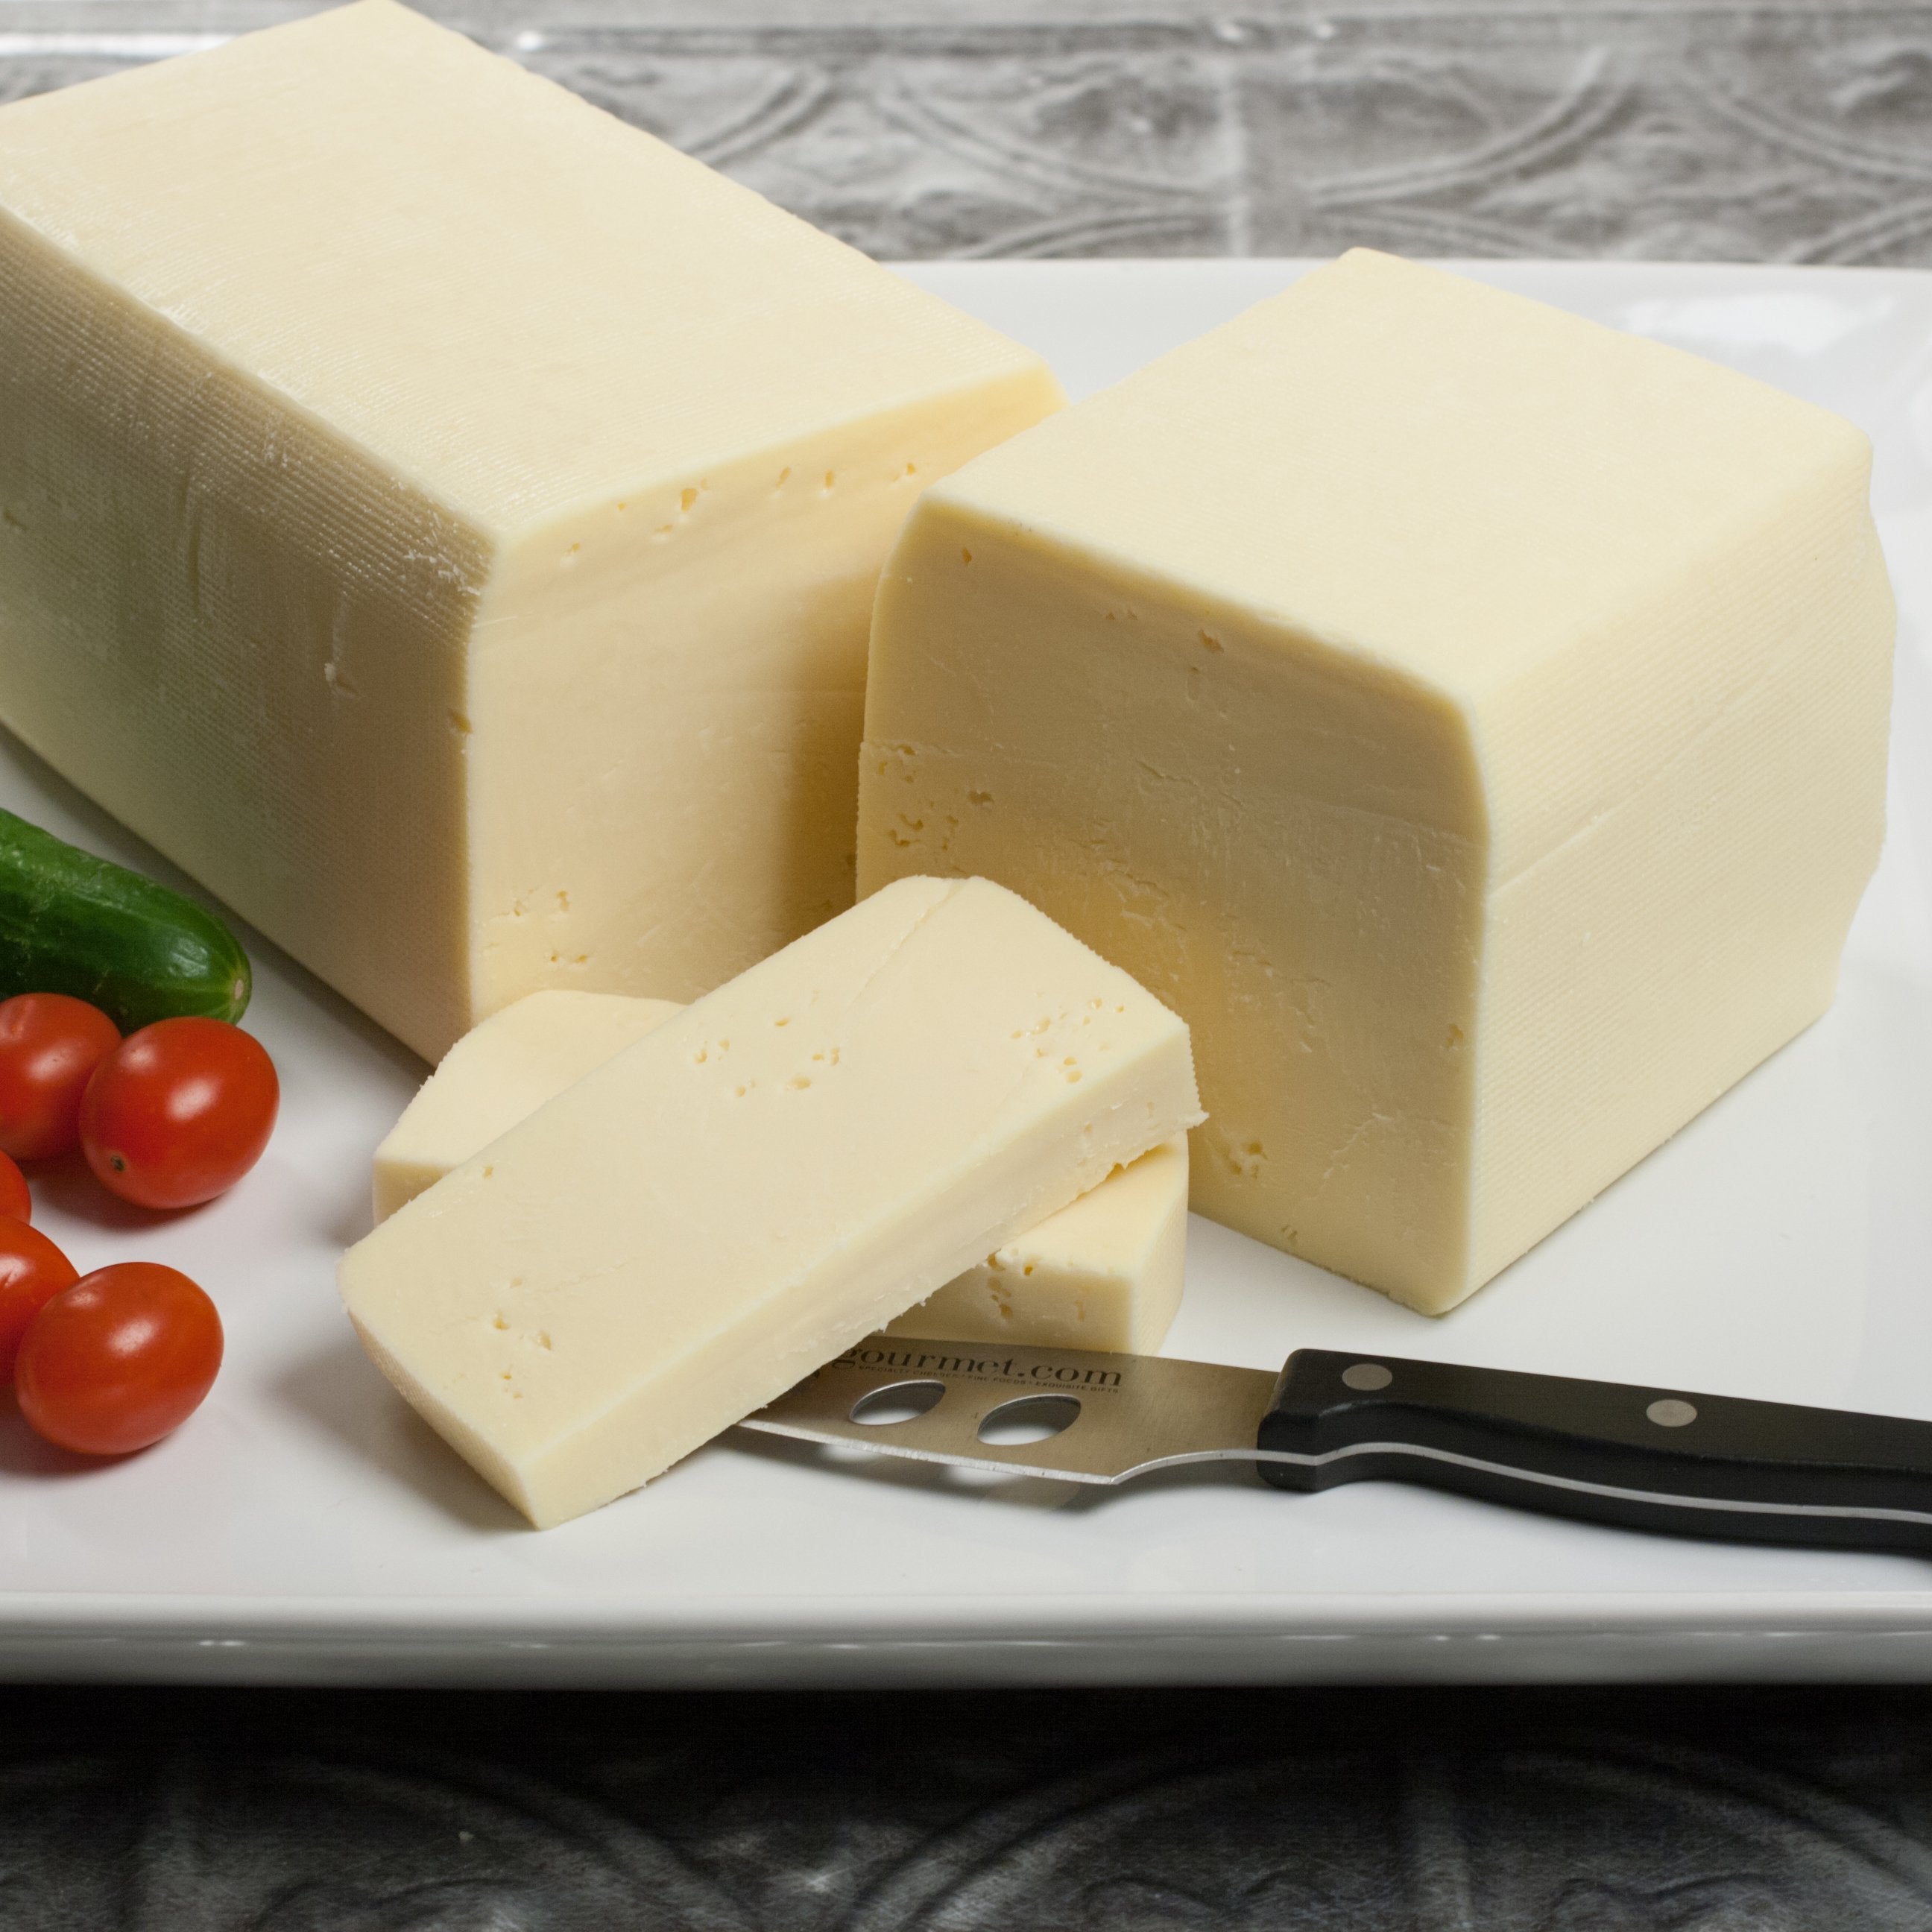 Butterkase Cheese